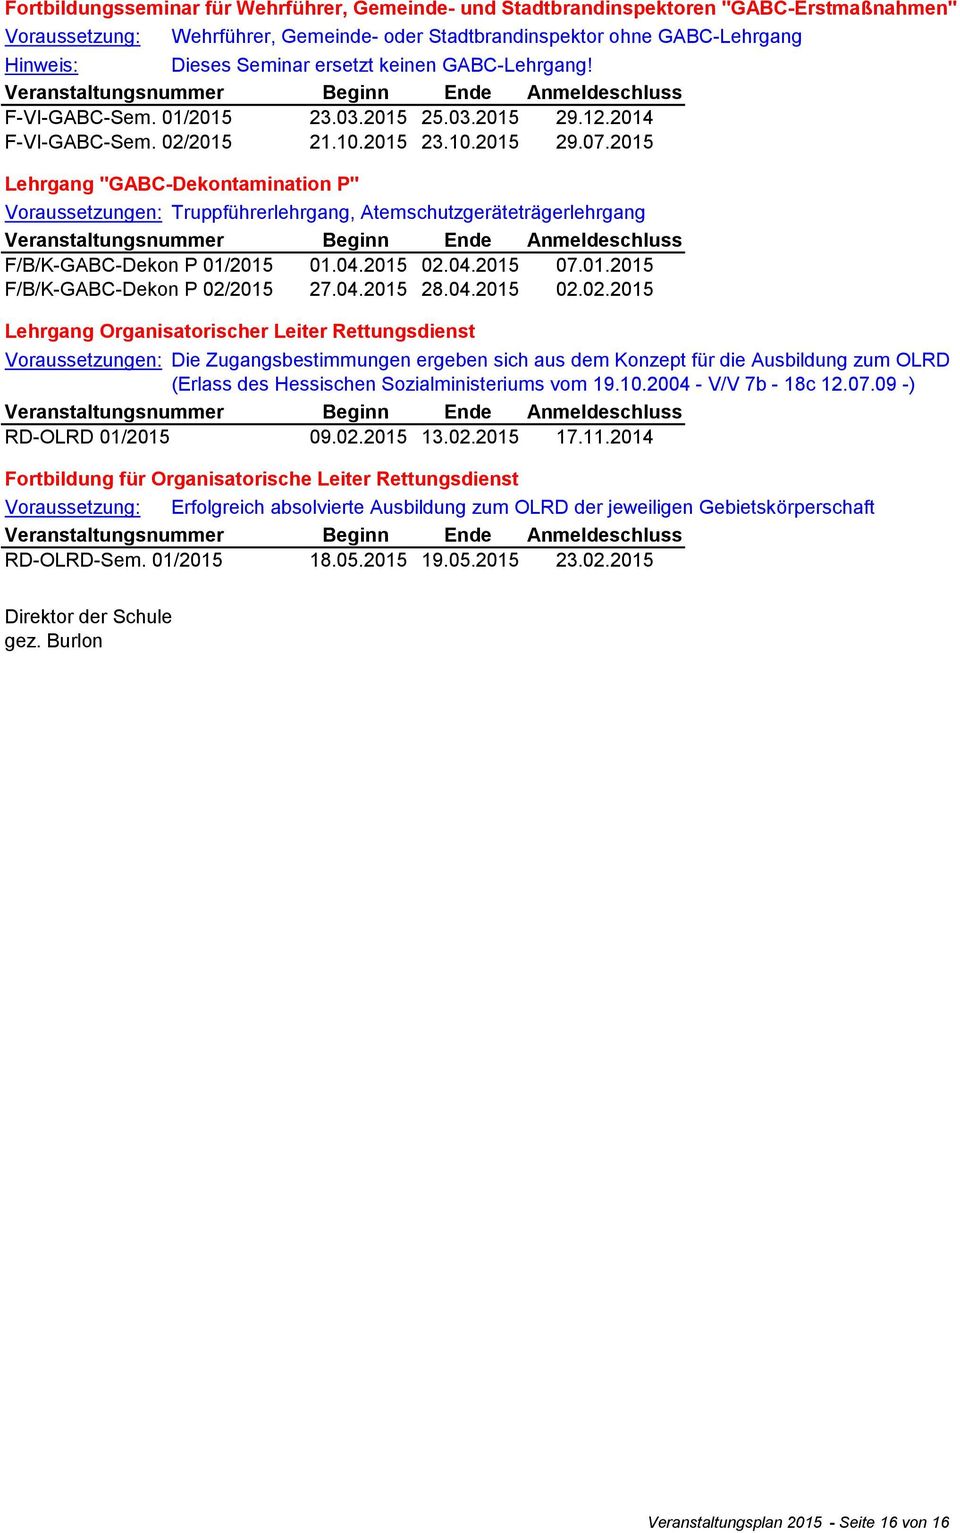 2015 Lehrgang "GABC-Dekontamination P" Voraussetzungen: Truppführerlehrgang, Atemschutzgeräteträgerlehrgang F/B/K-GABC-Dekon P 01/2015 01.04.2015 02.04.2015 07.01.2015 F/B/K-GABC-Dekon P 02/2015 27.